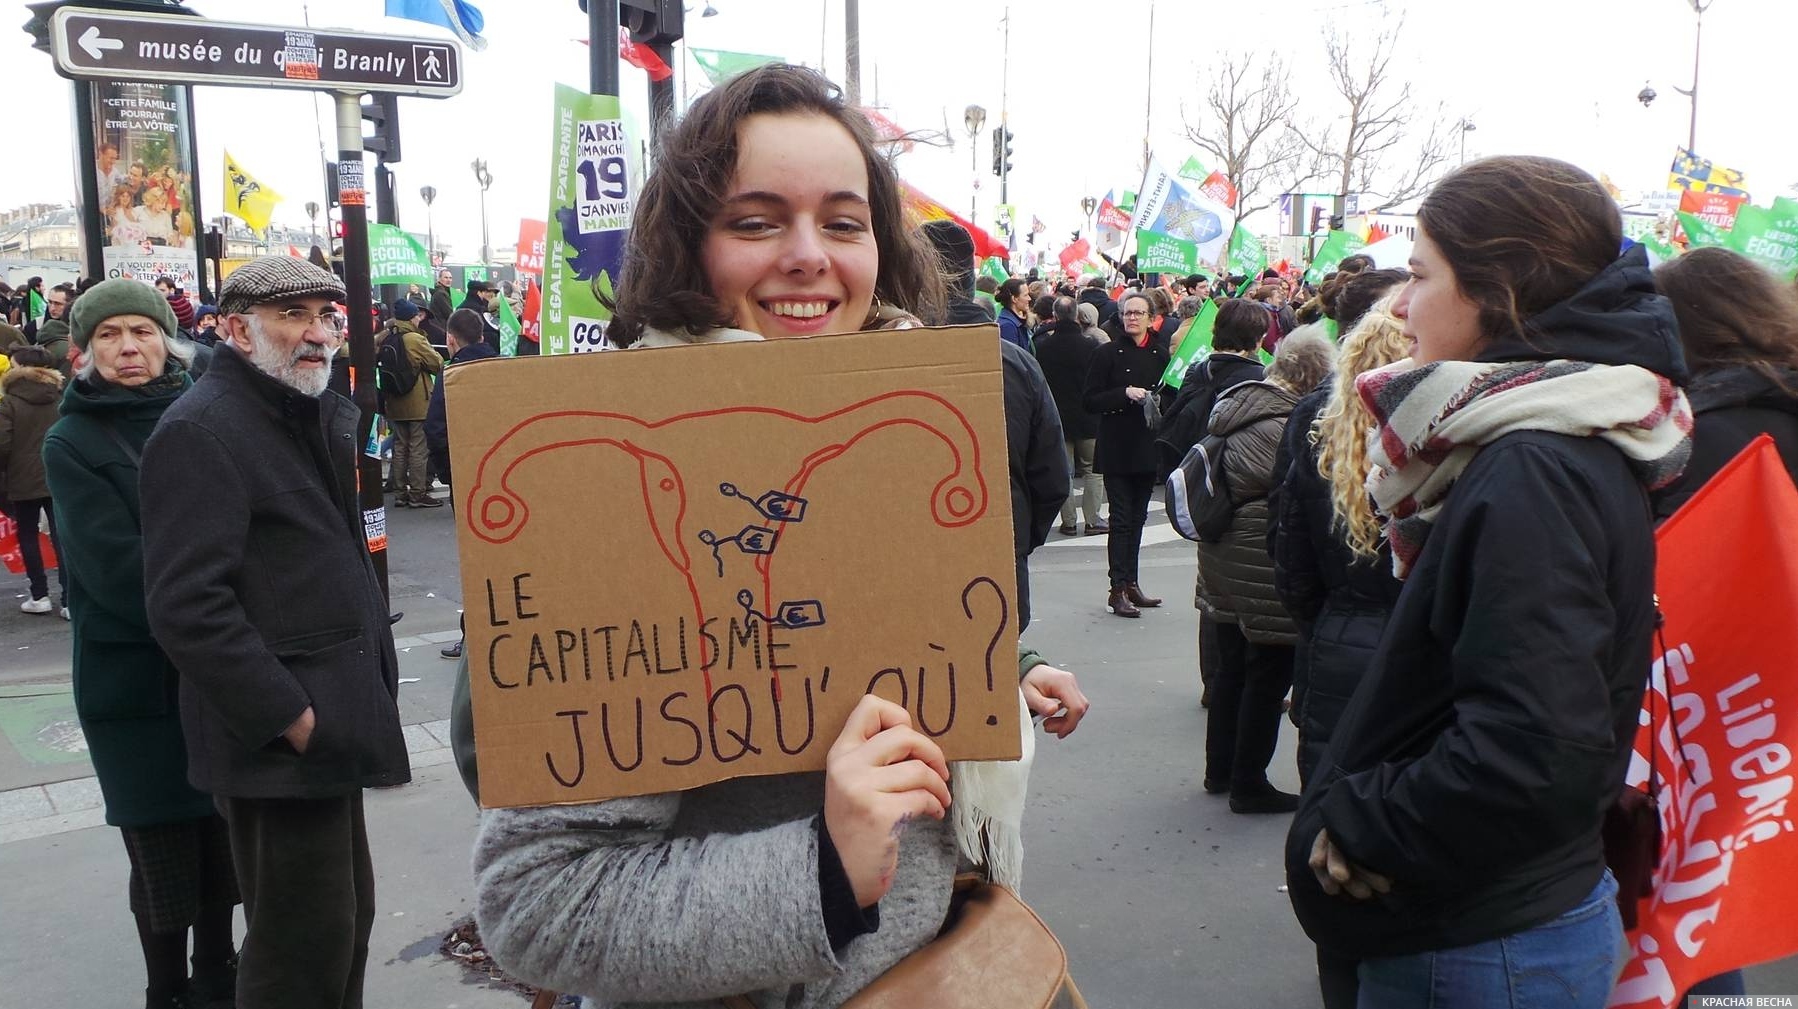 Манифестация сторонников традиционных ценностей против закона по биоэтике. Париж, январь 2020. На плакате написано: «Капитализм, до какого [предела]?»